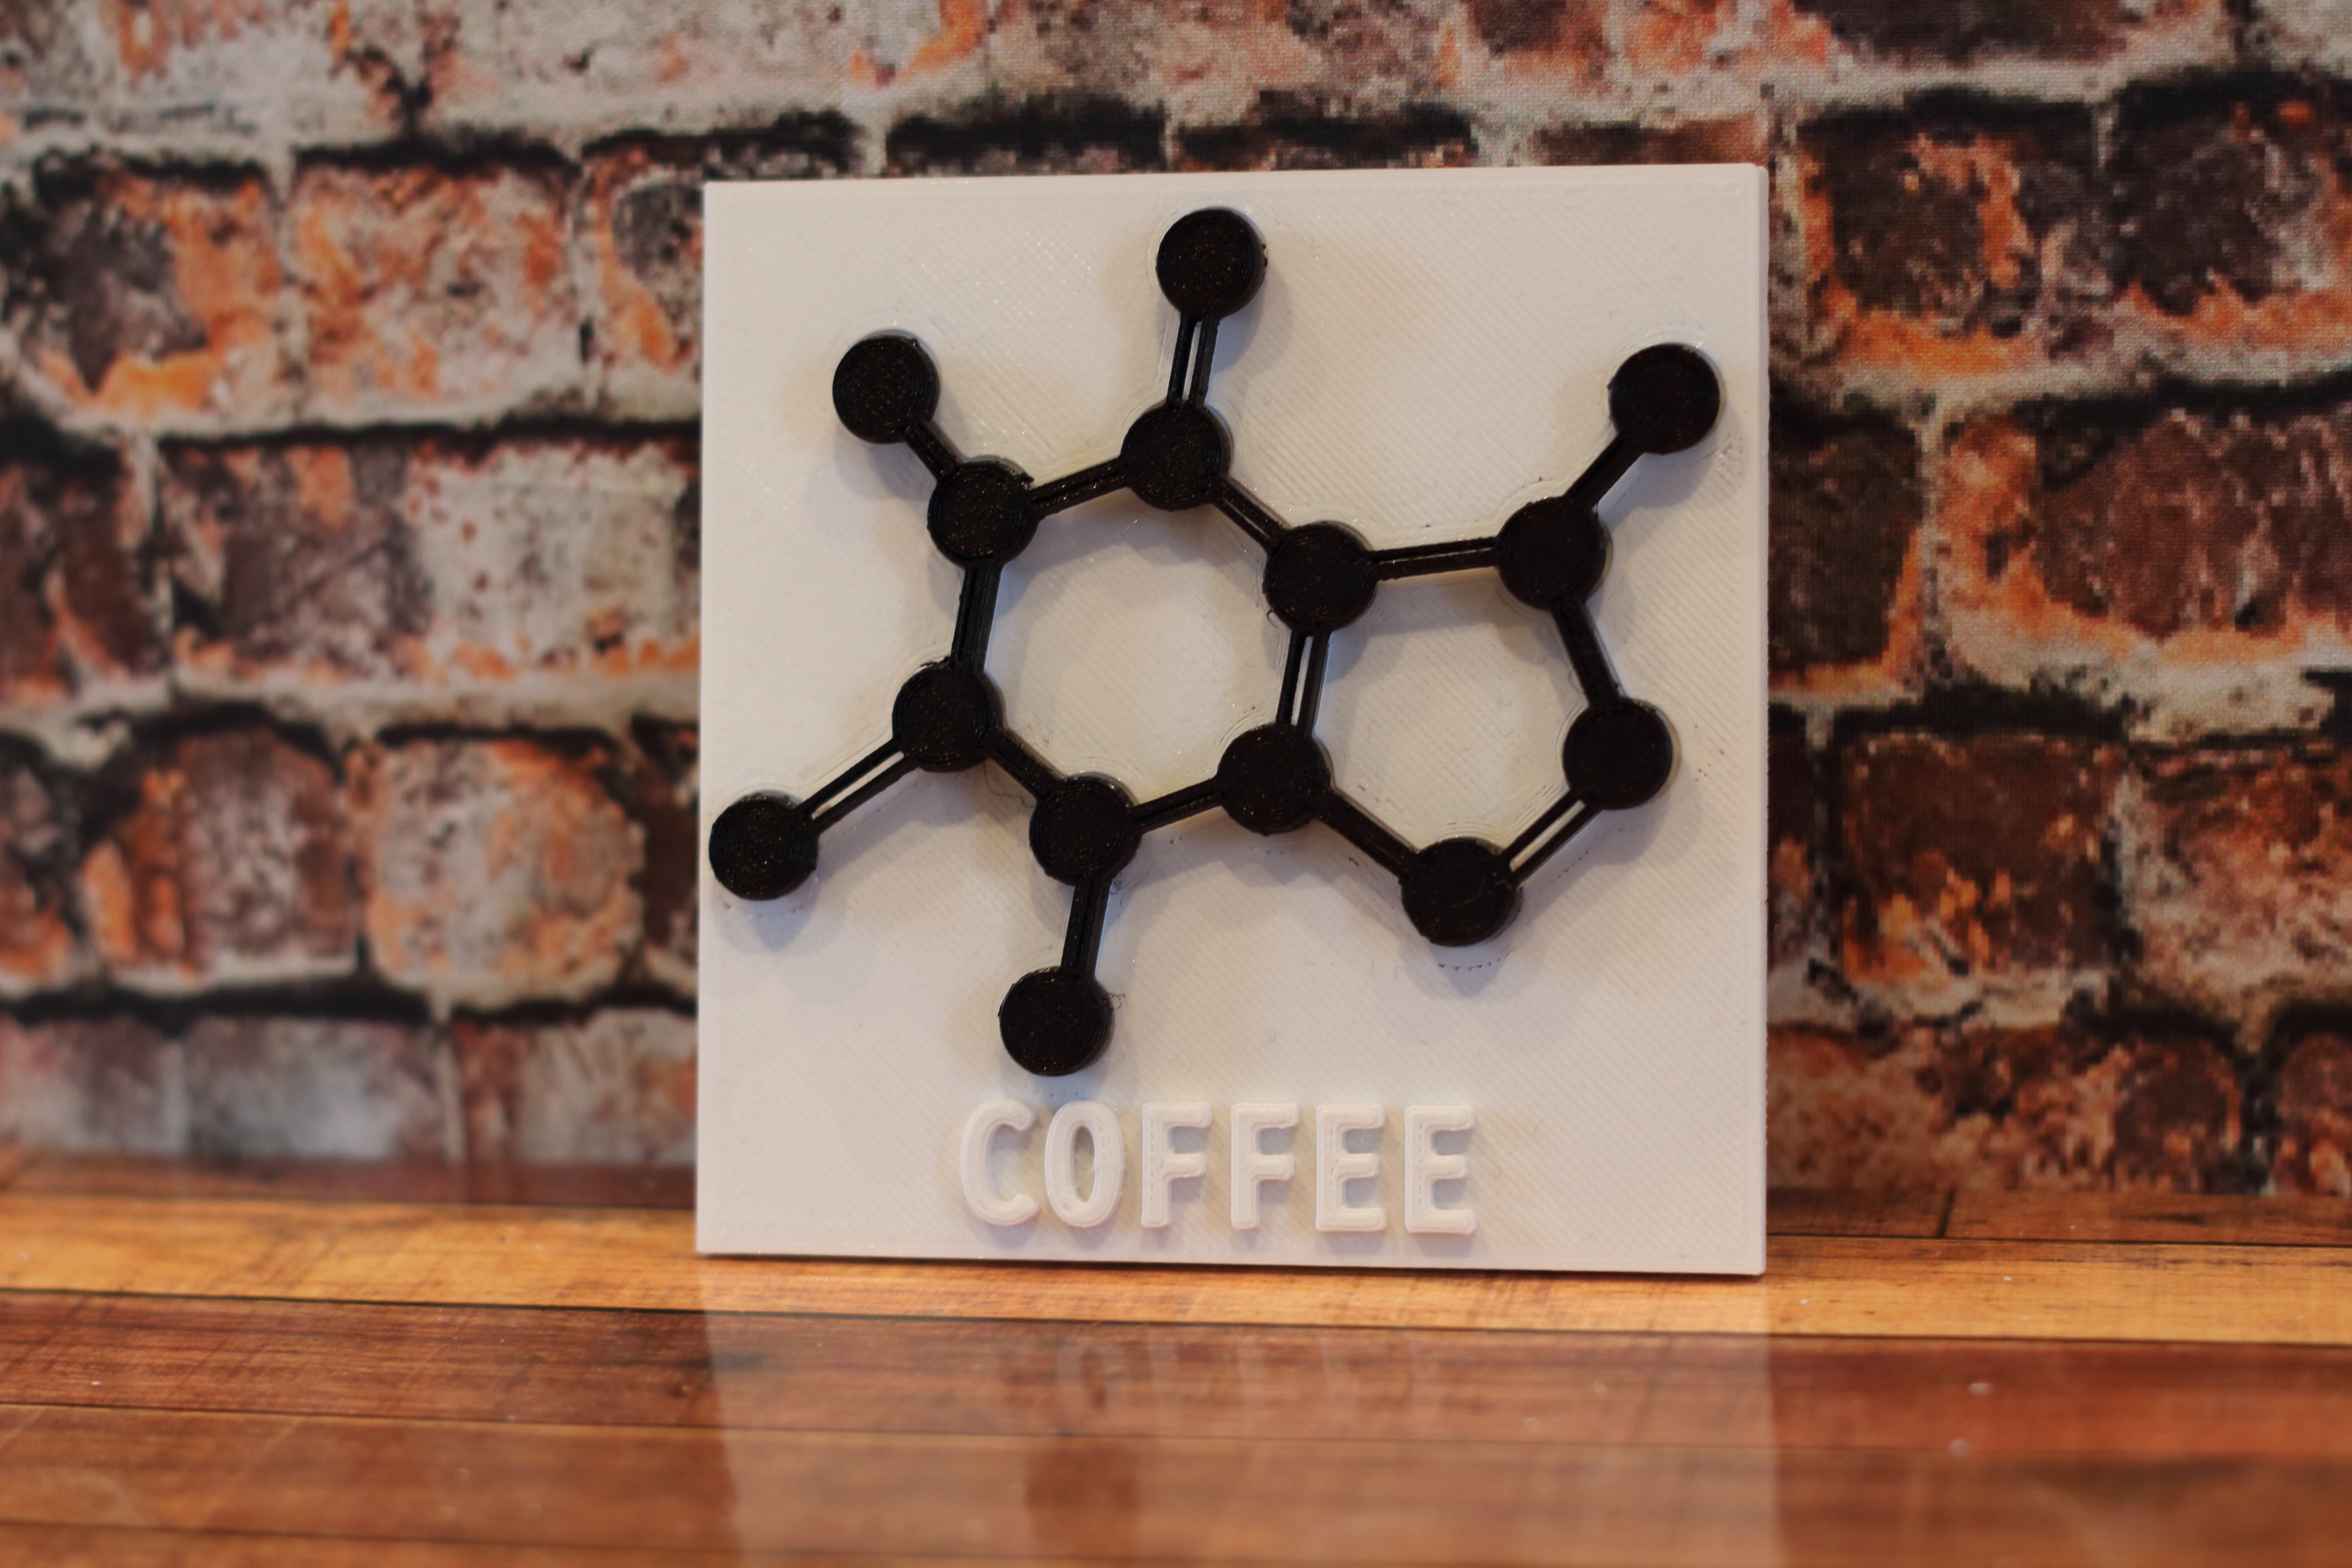 Coffee Molecule